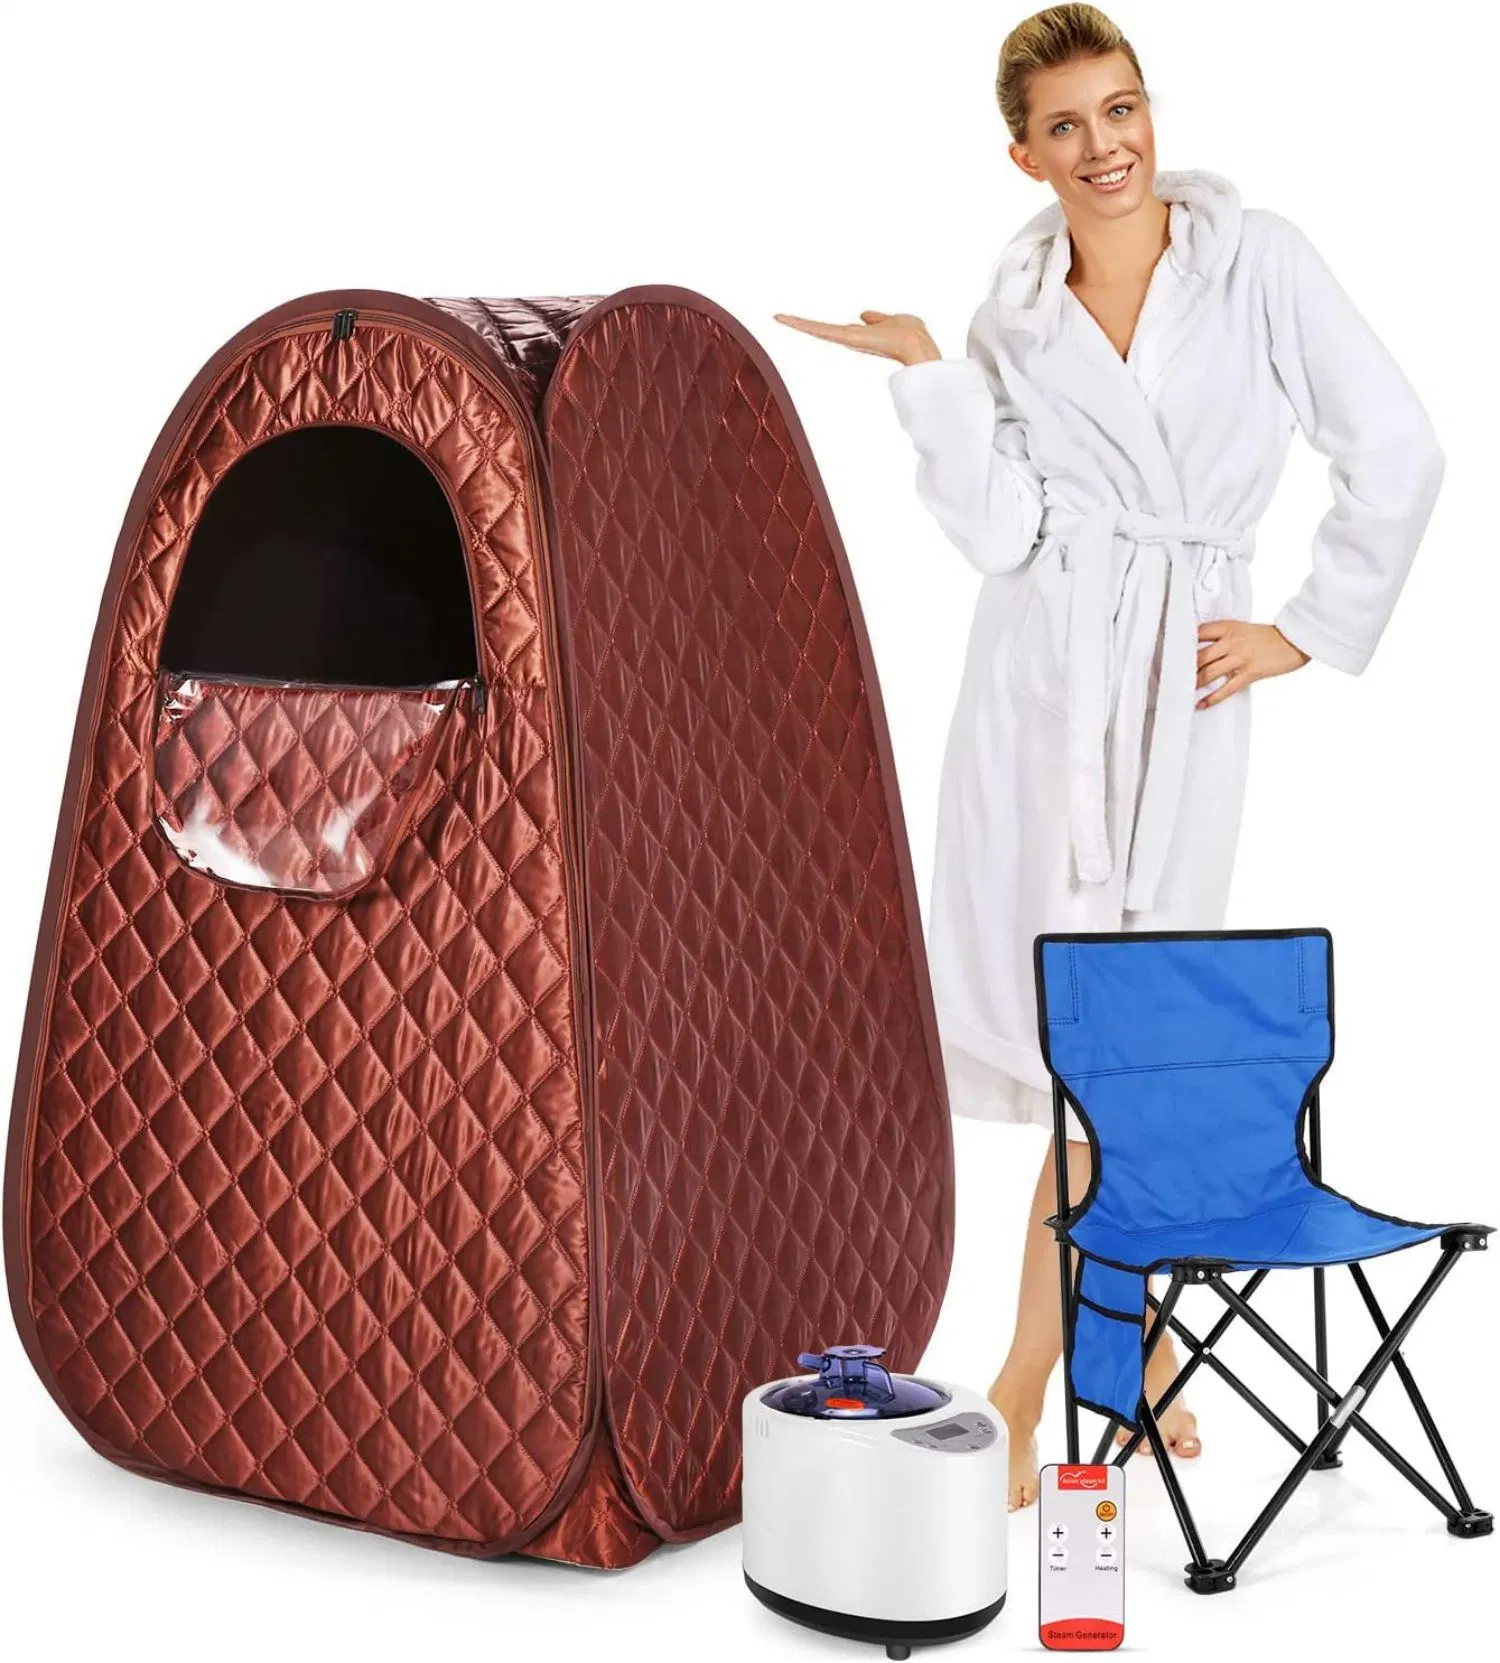 Sauna vapeur portable SPA pour relaxation thérapeutique et détox à domicile.